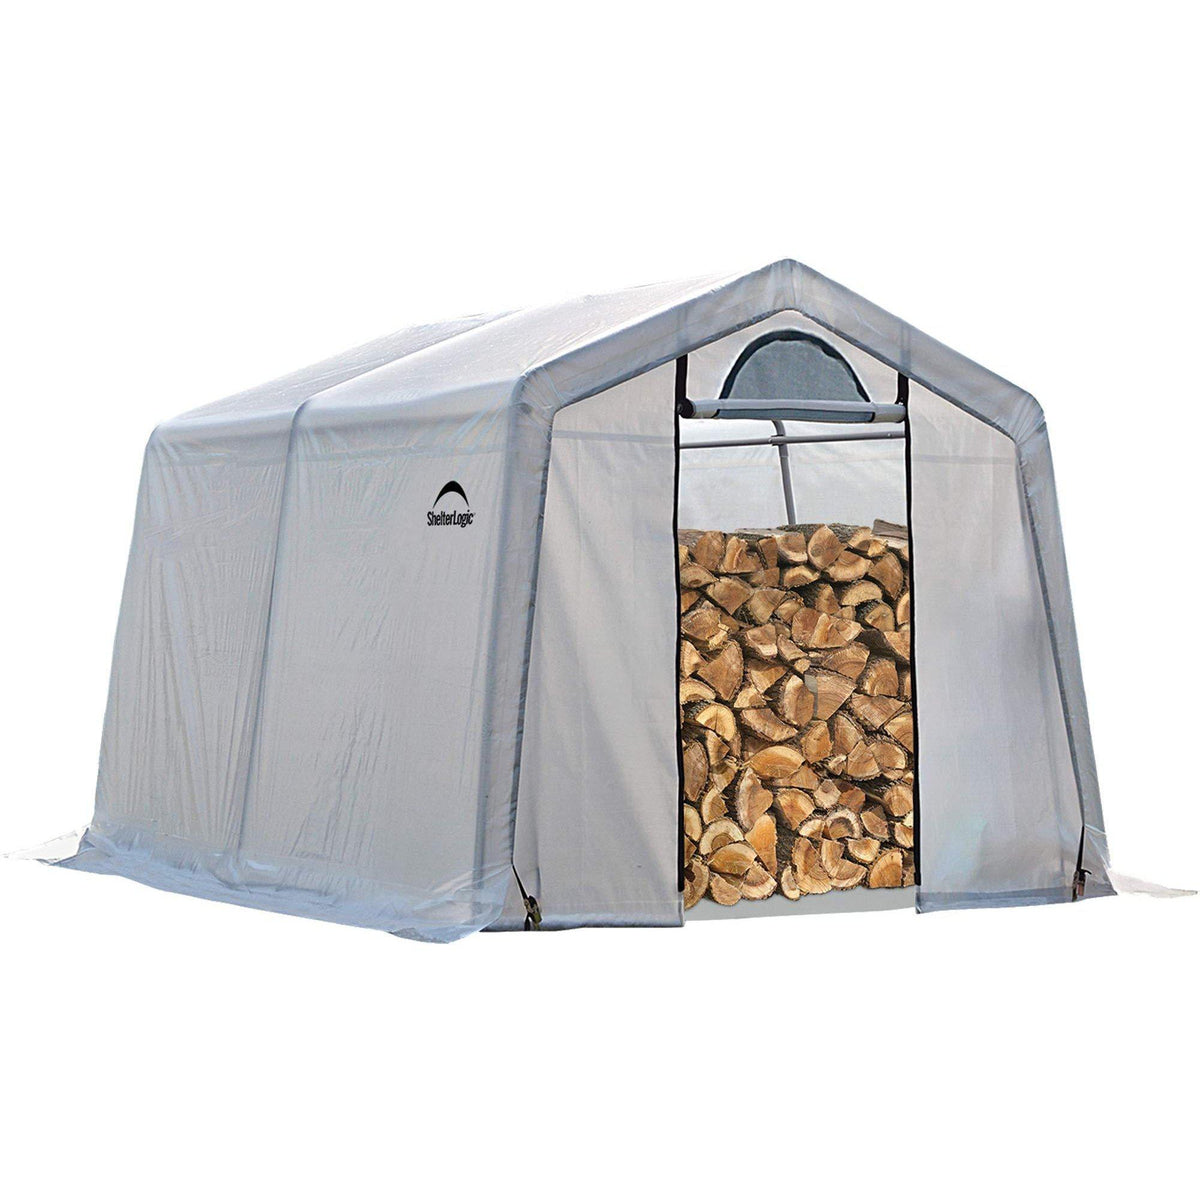 ShelterLogic Firewood Seasoning Shed, 10 x 10 x 8 ft.